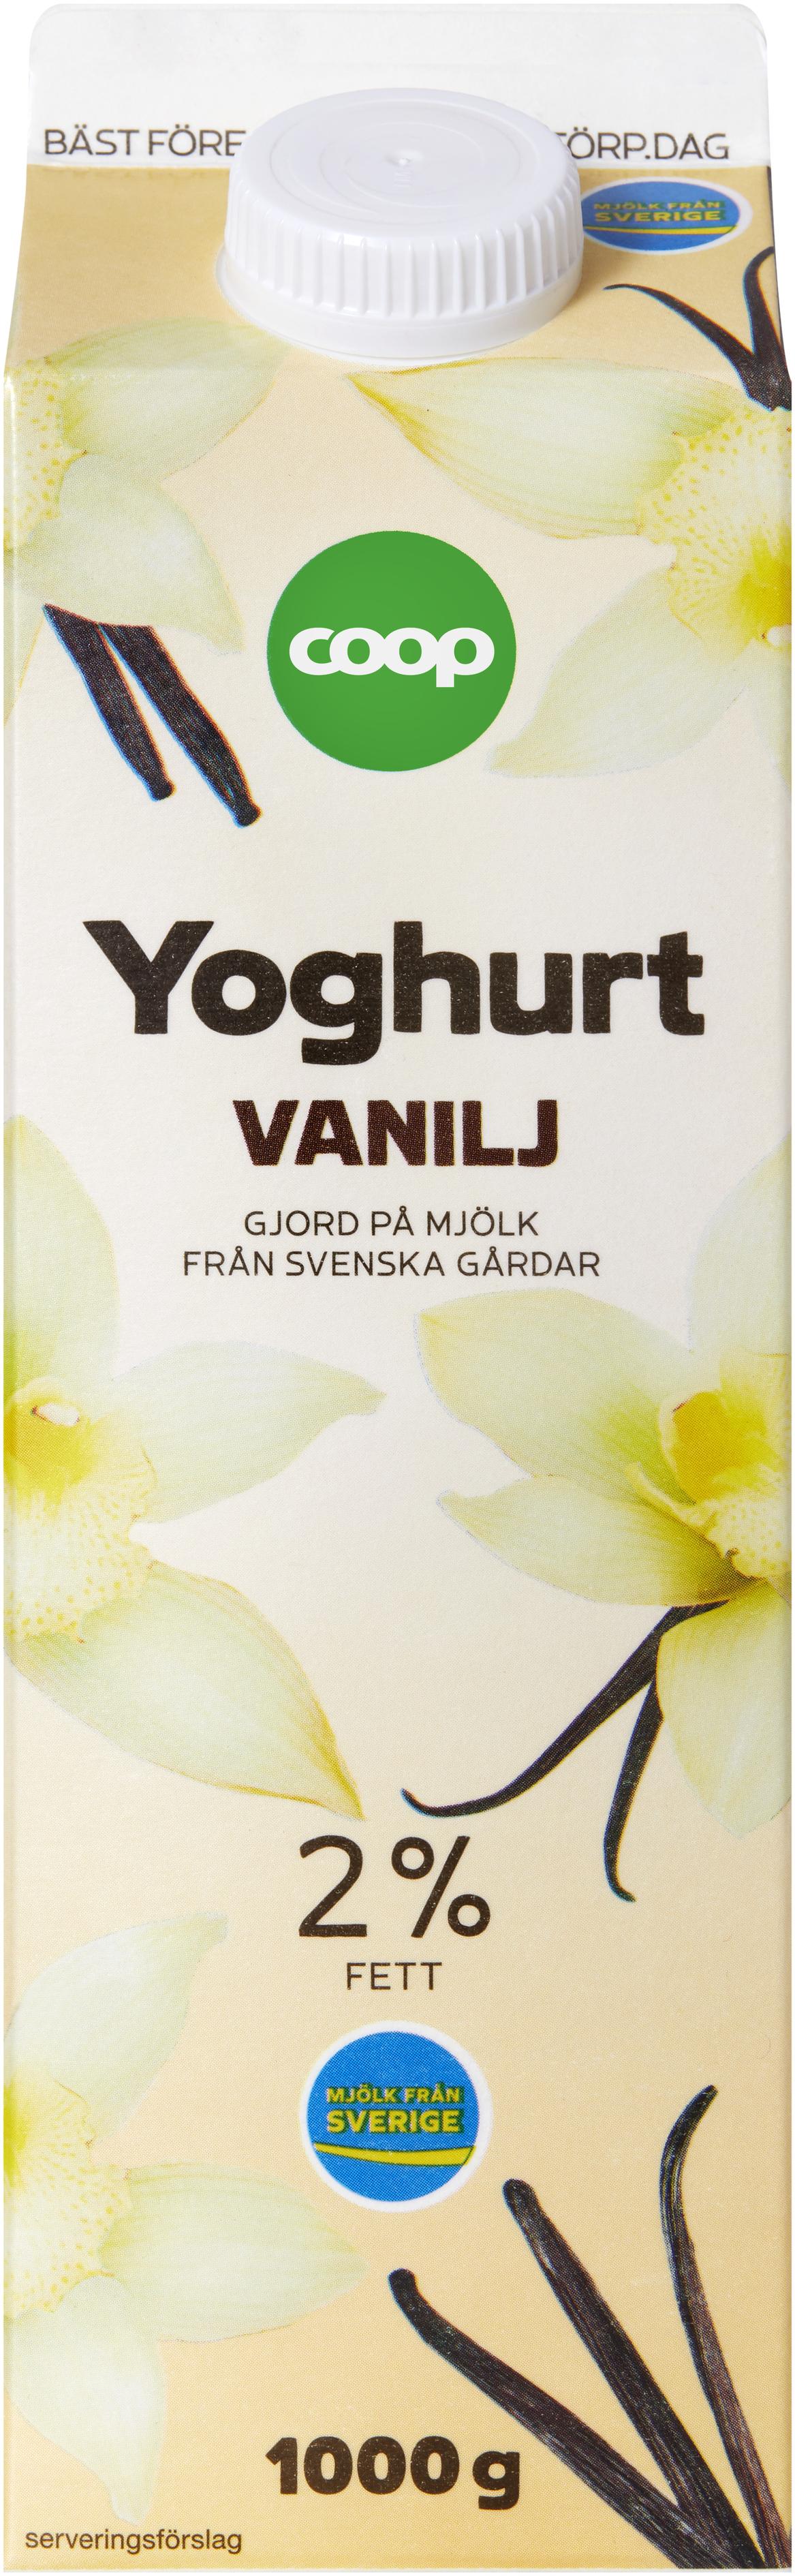 Yoghurt Vanilj för 22,95 kr på Coop